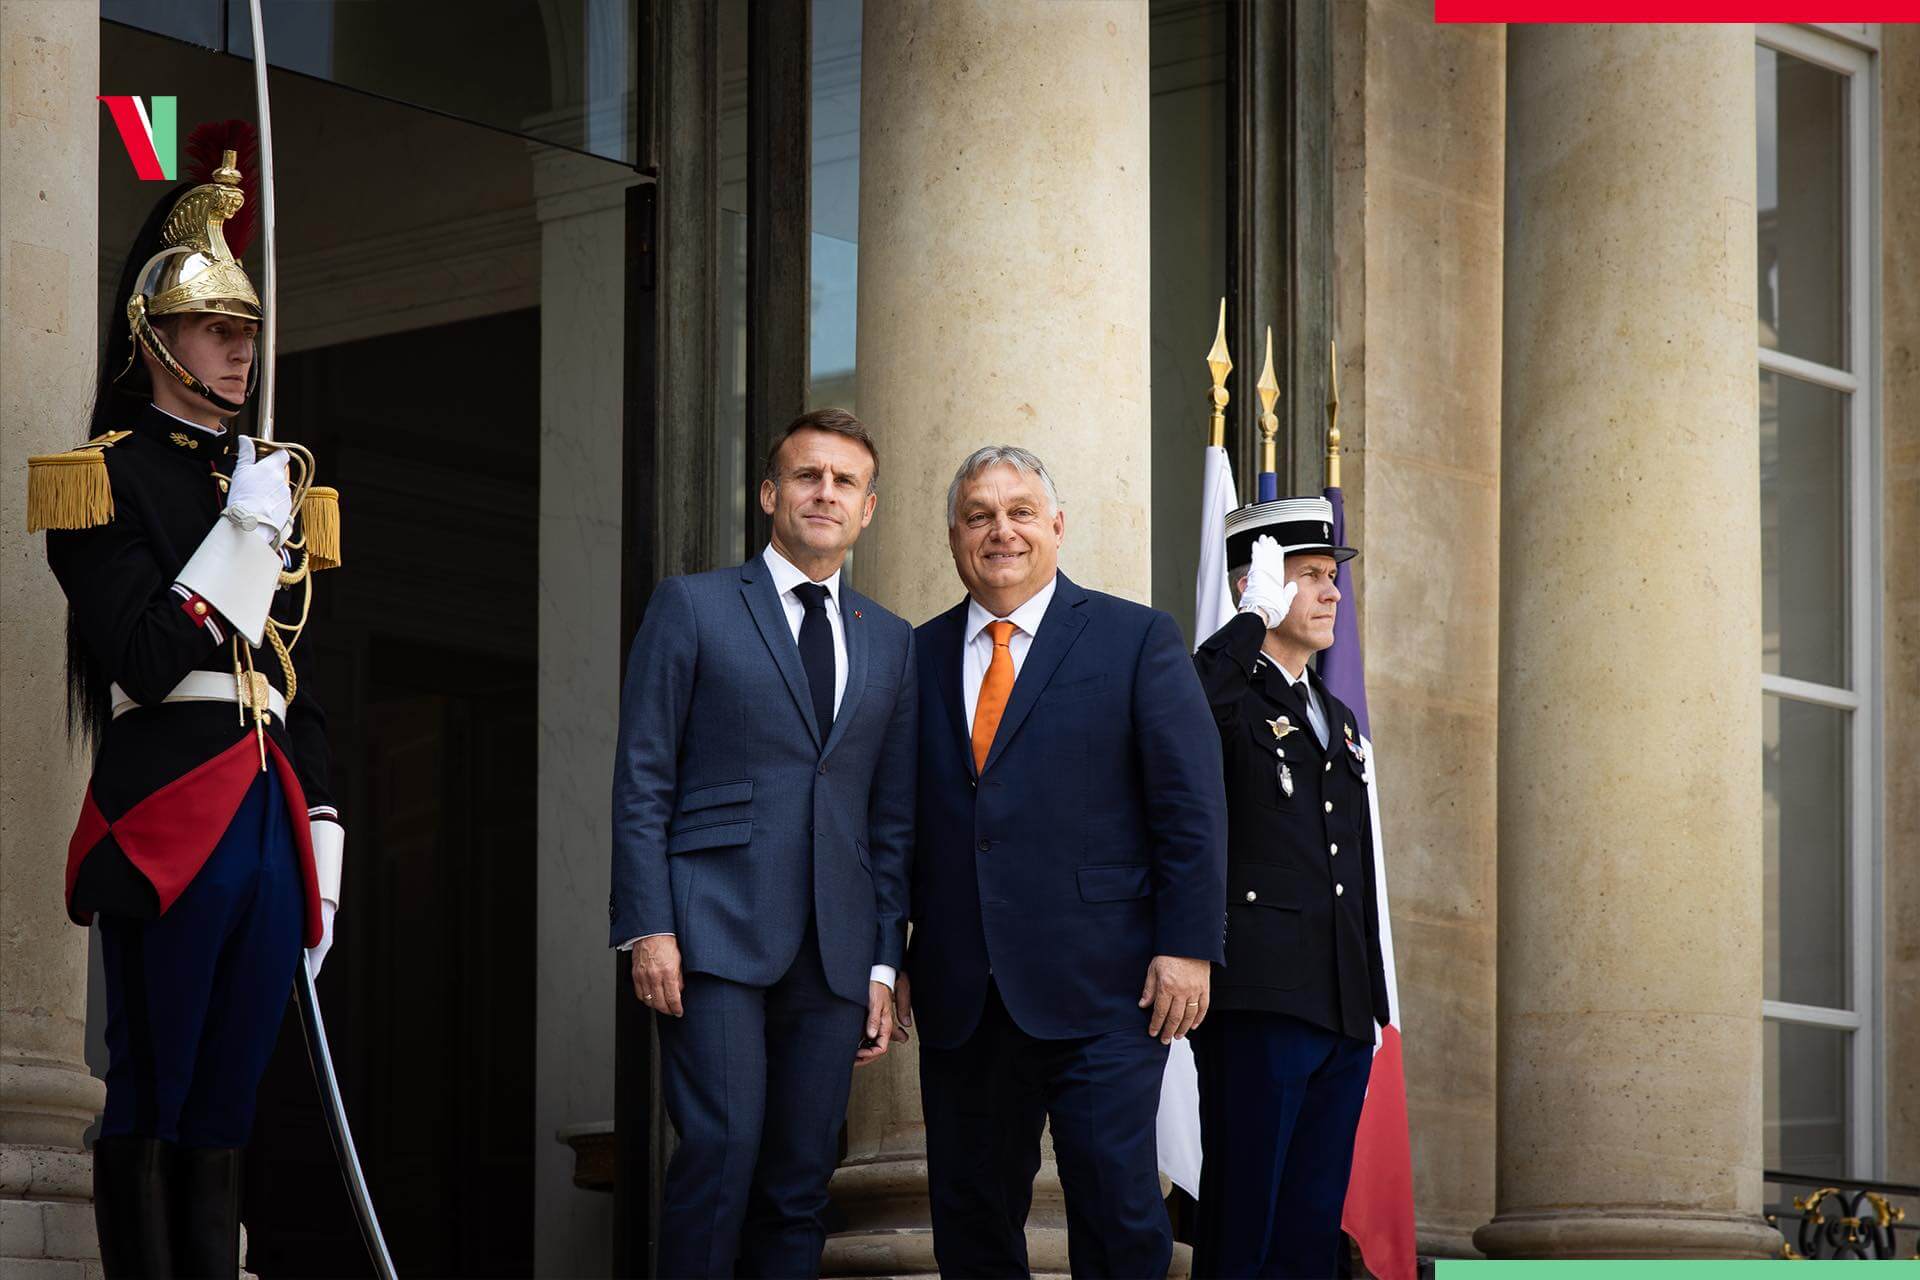 Orbán Met Macron - What Was Discussed?